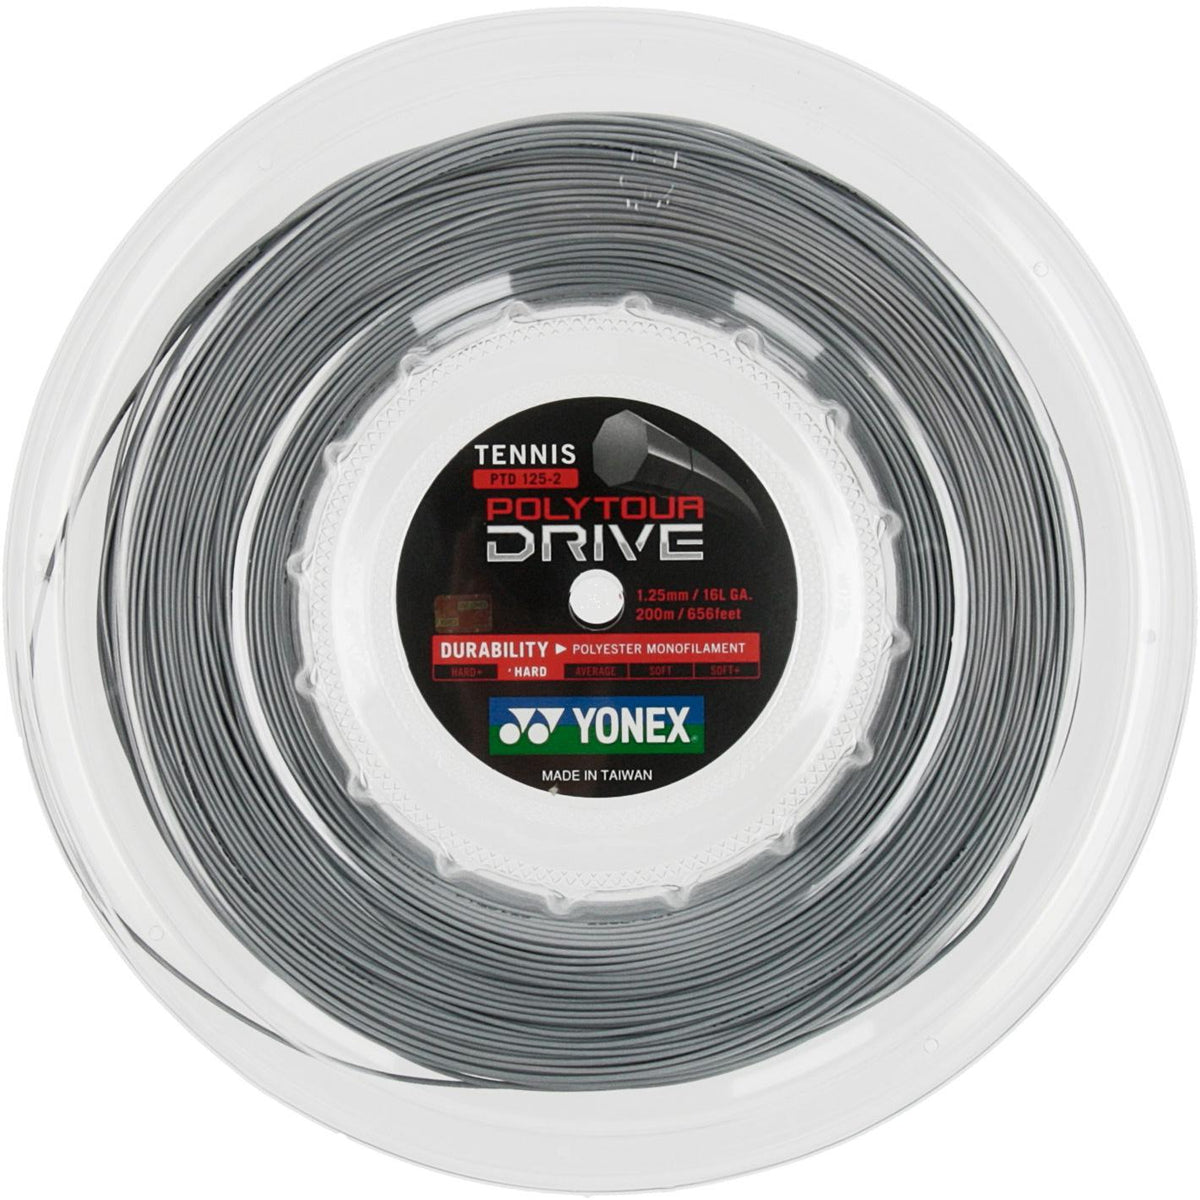 Yonex Polytour Drive 1.25 mm 200m Tennis String